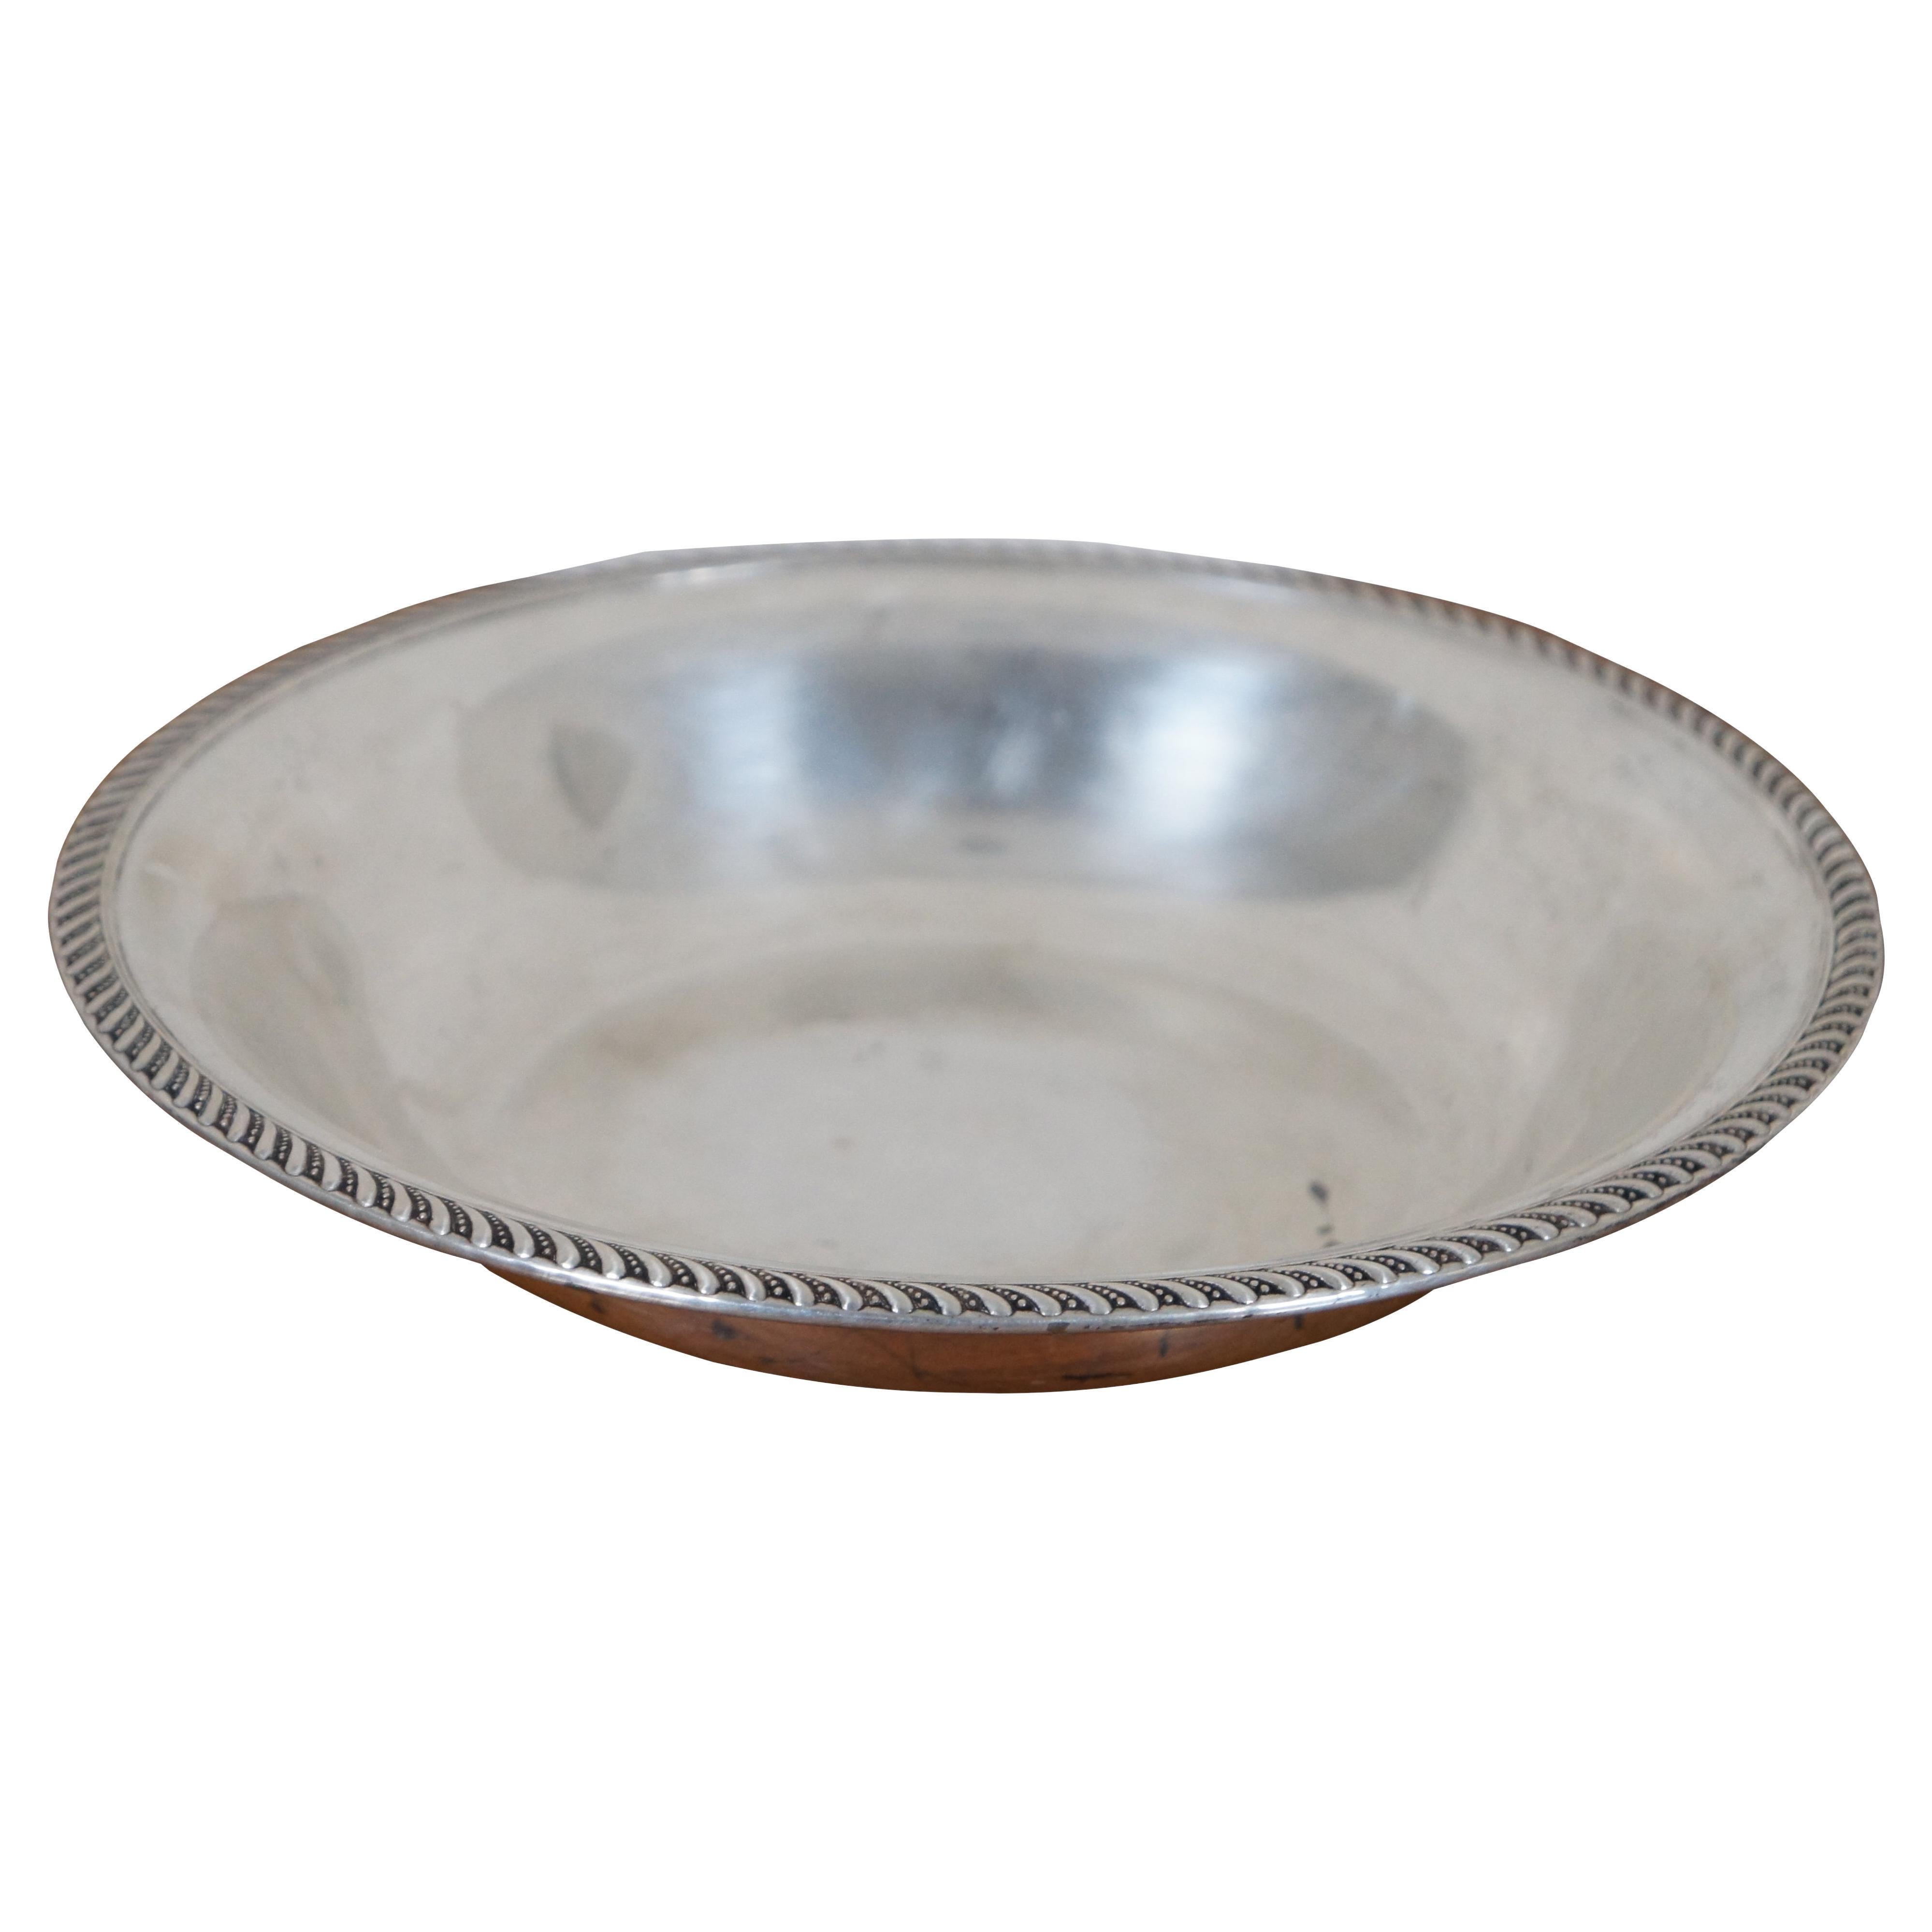 Vintage Preisner Psco Sterling Silver Serving Bowl Candy Dish Centerpiece 200g